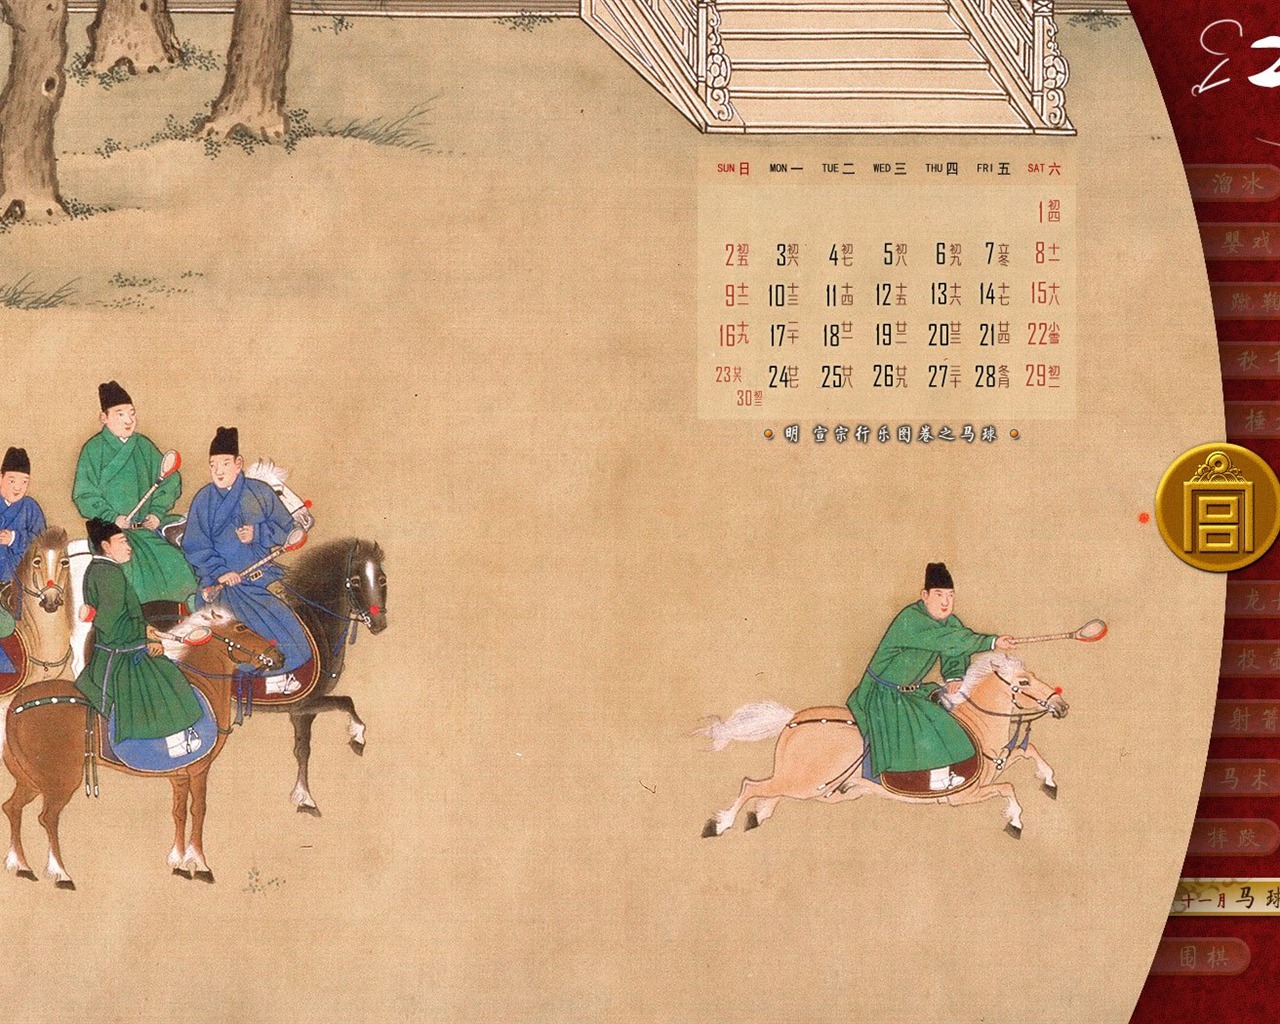 北京故宫博物院 文物展壁纸(二)20 - 1280x1024